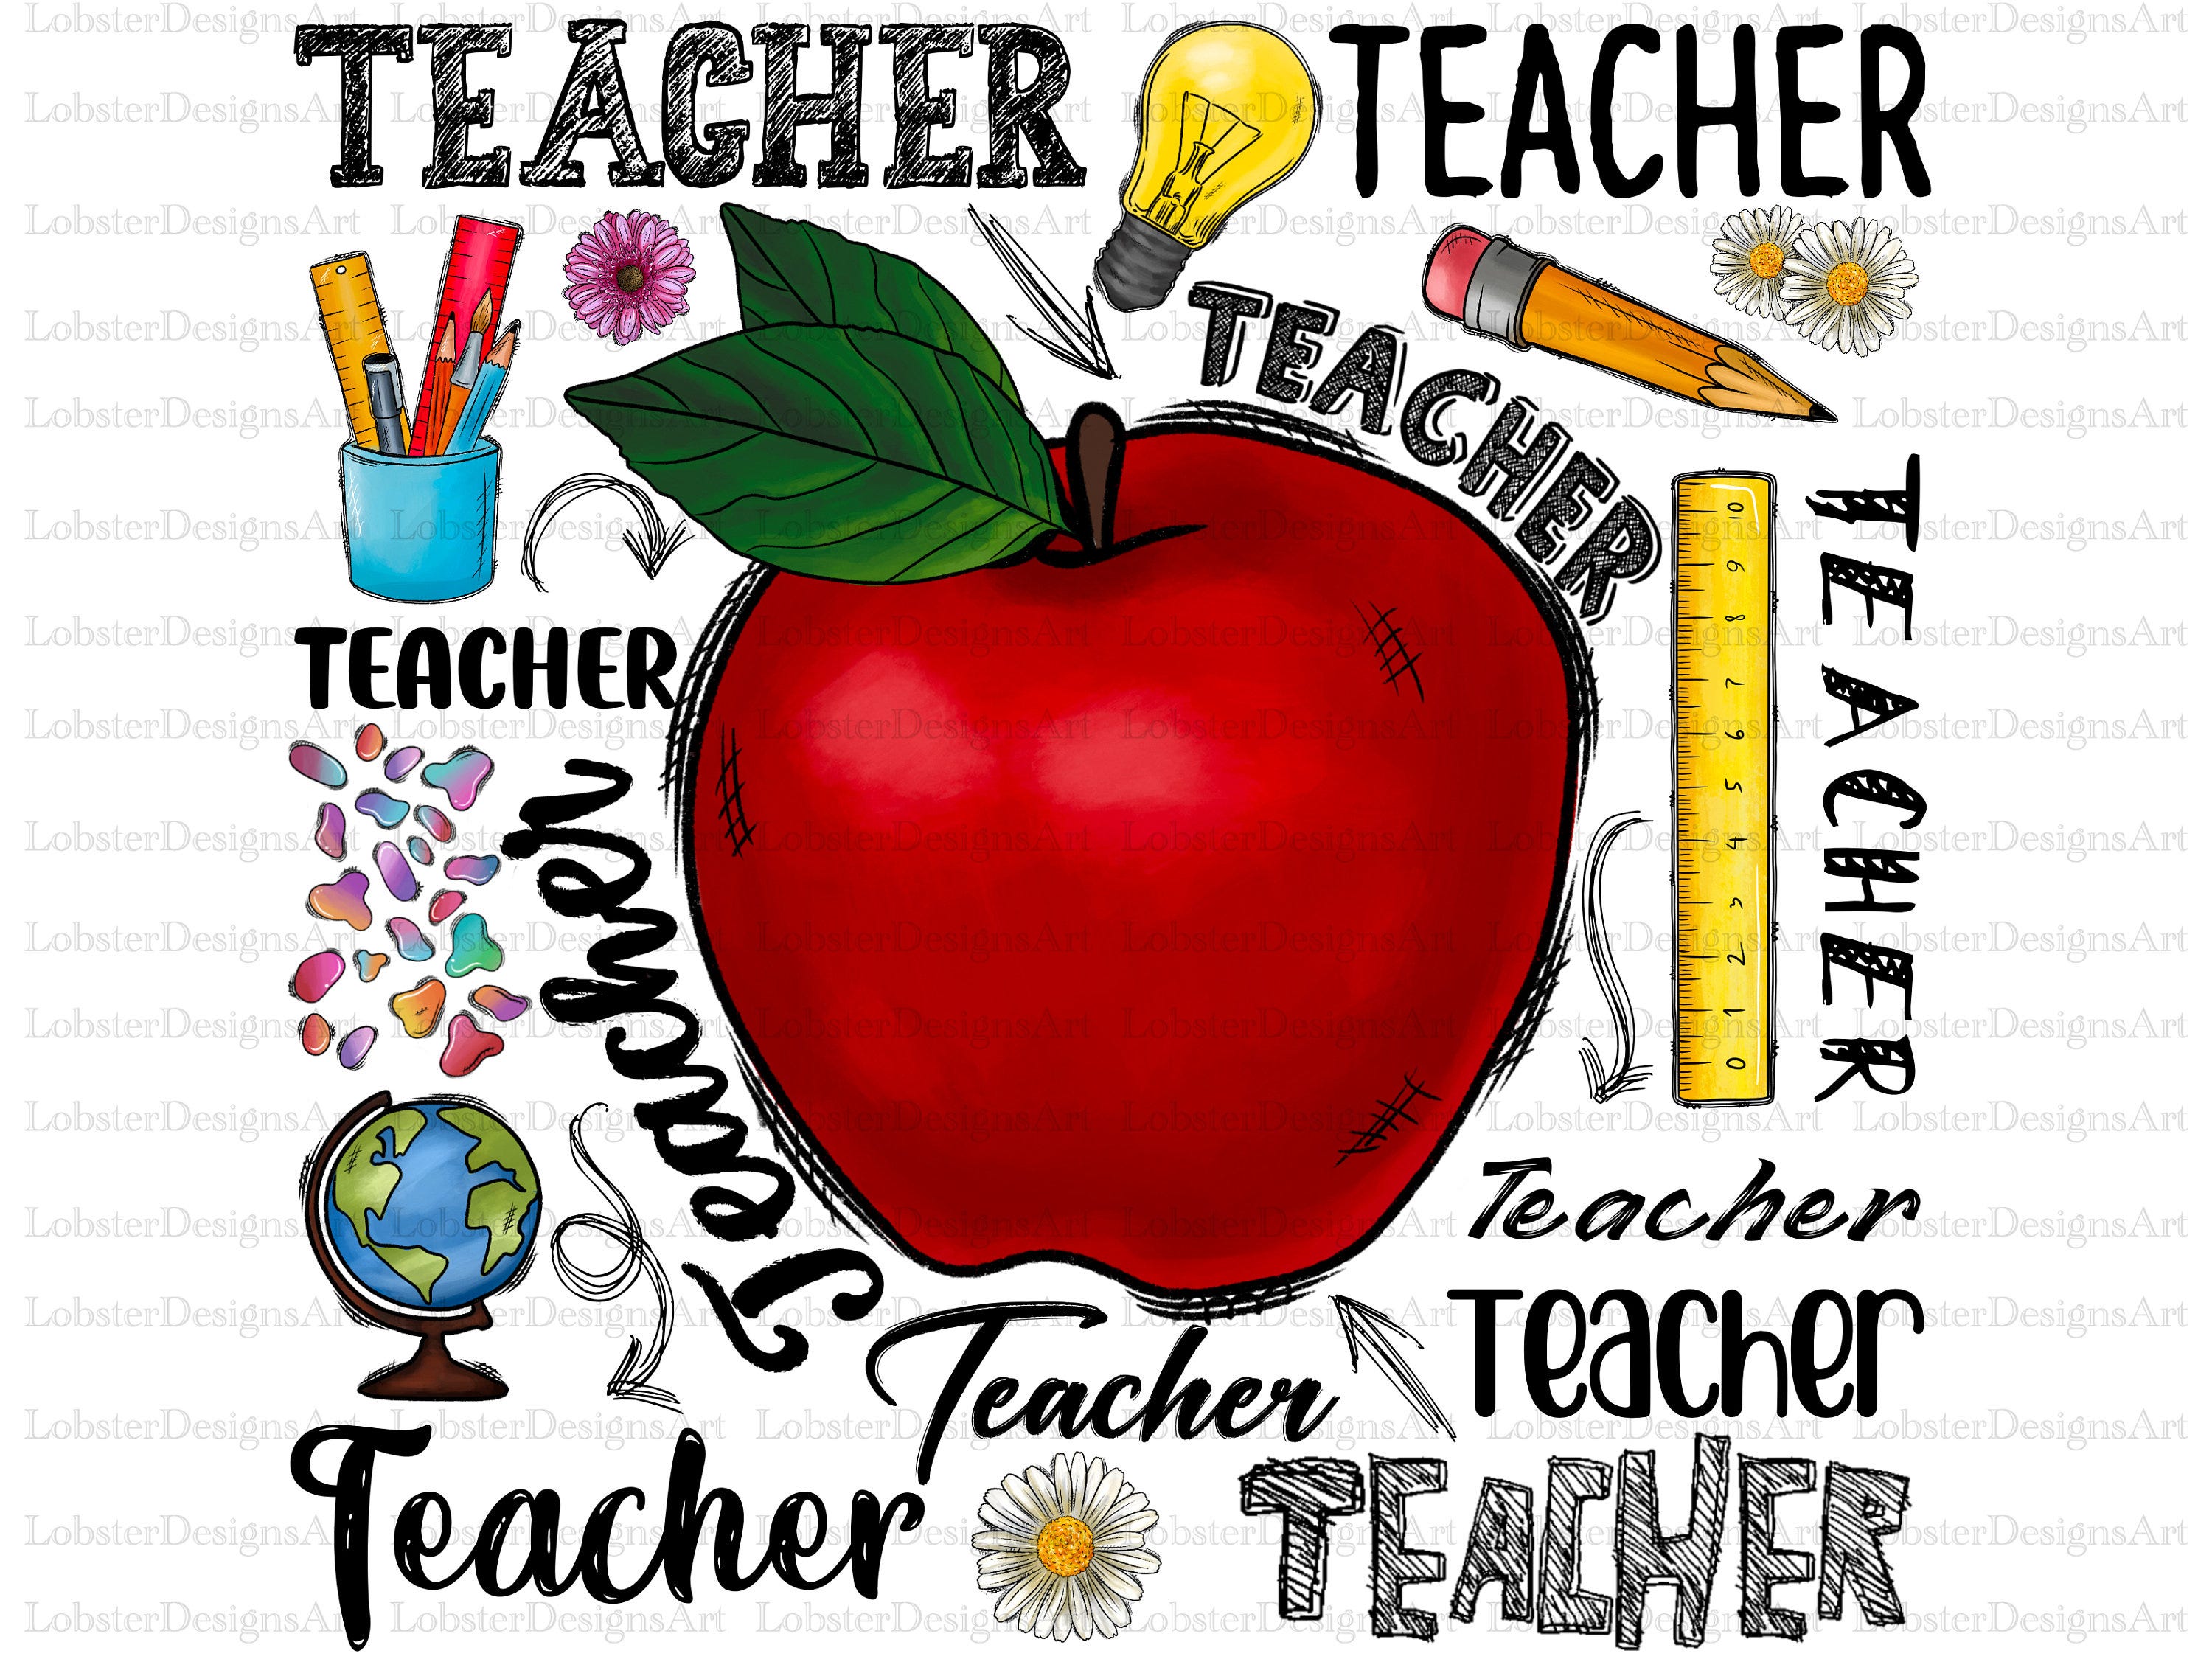 Teacher Design Png File, Western, Teacher Png, Apple Png, School Png, Pencil png, Teacher png, School,Digital Download,Sublimation Design